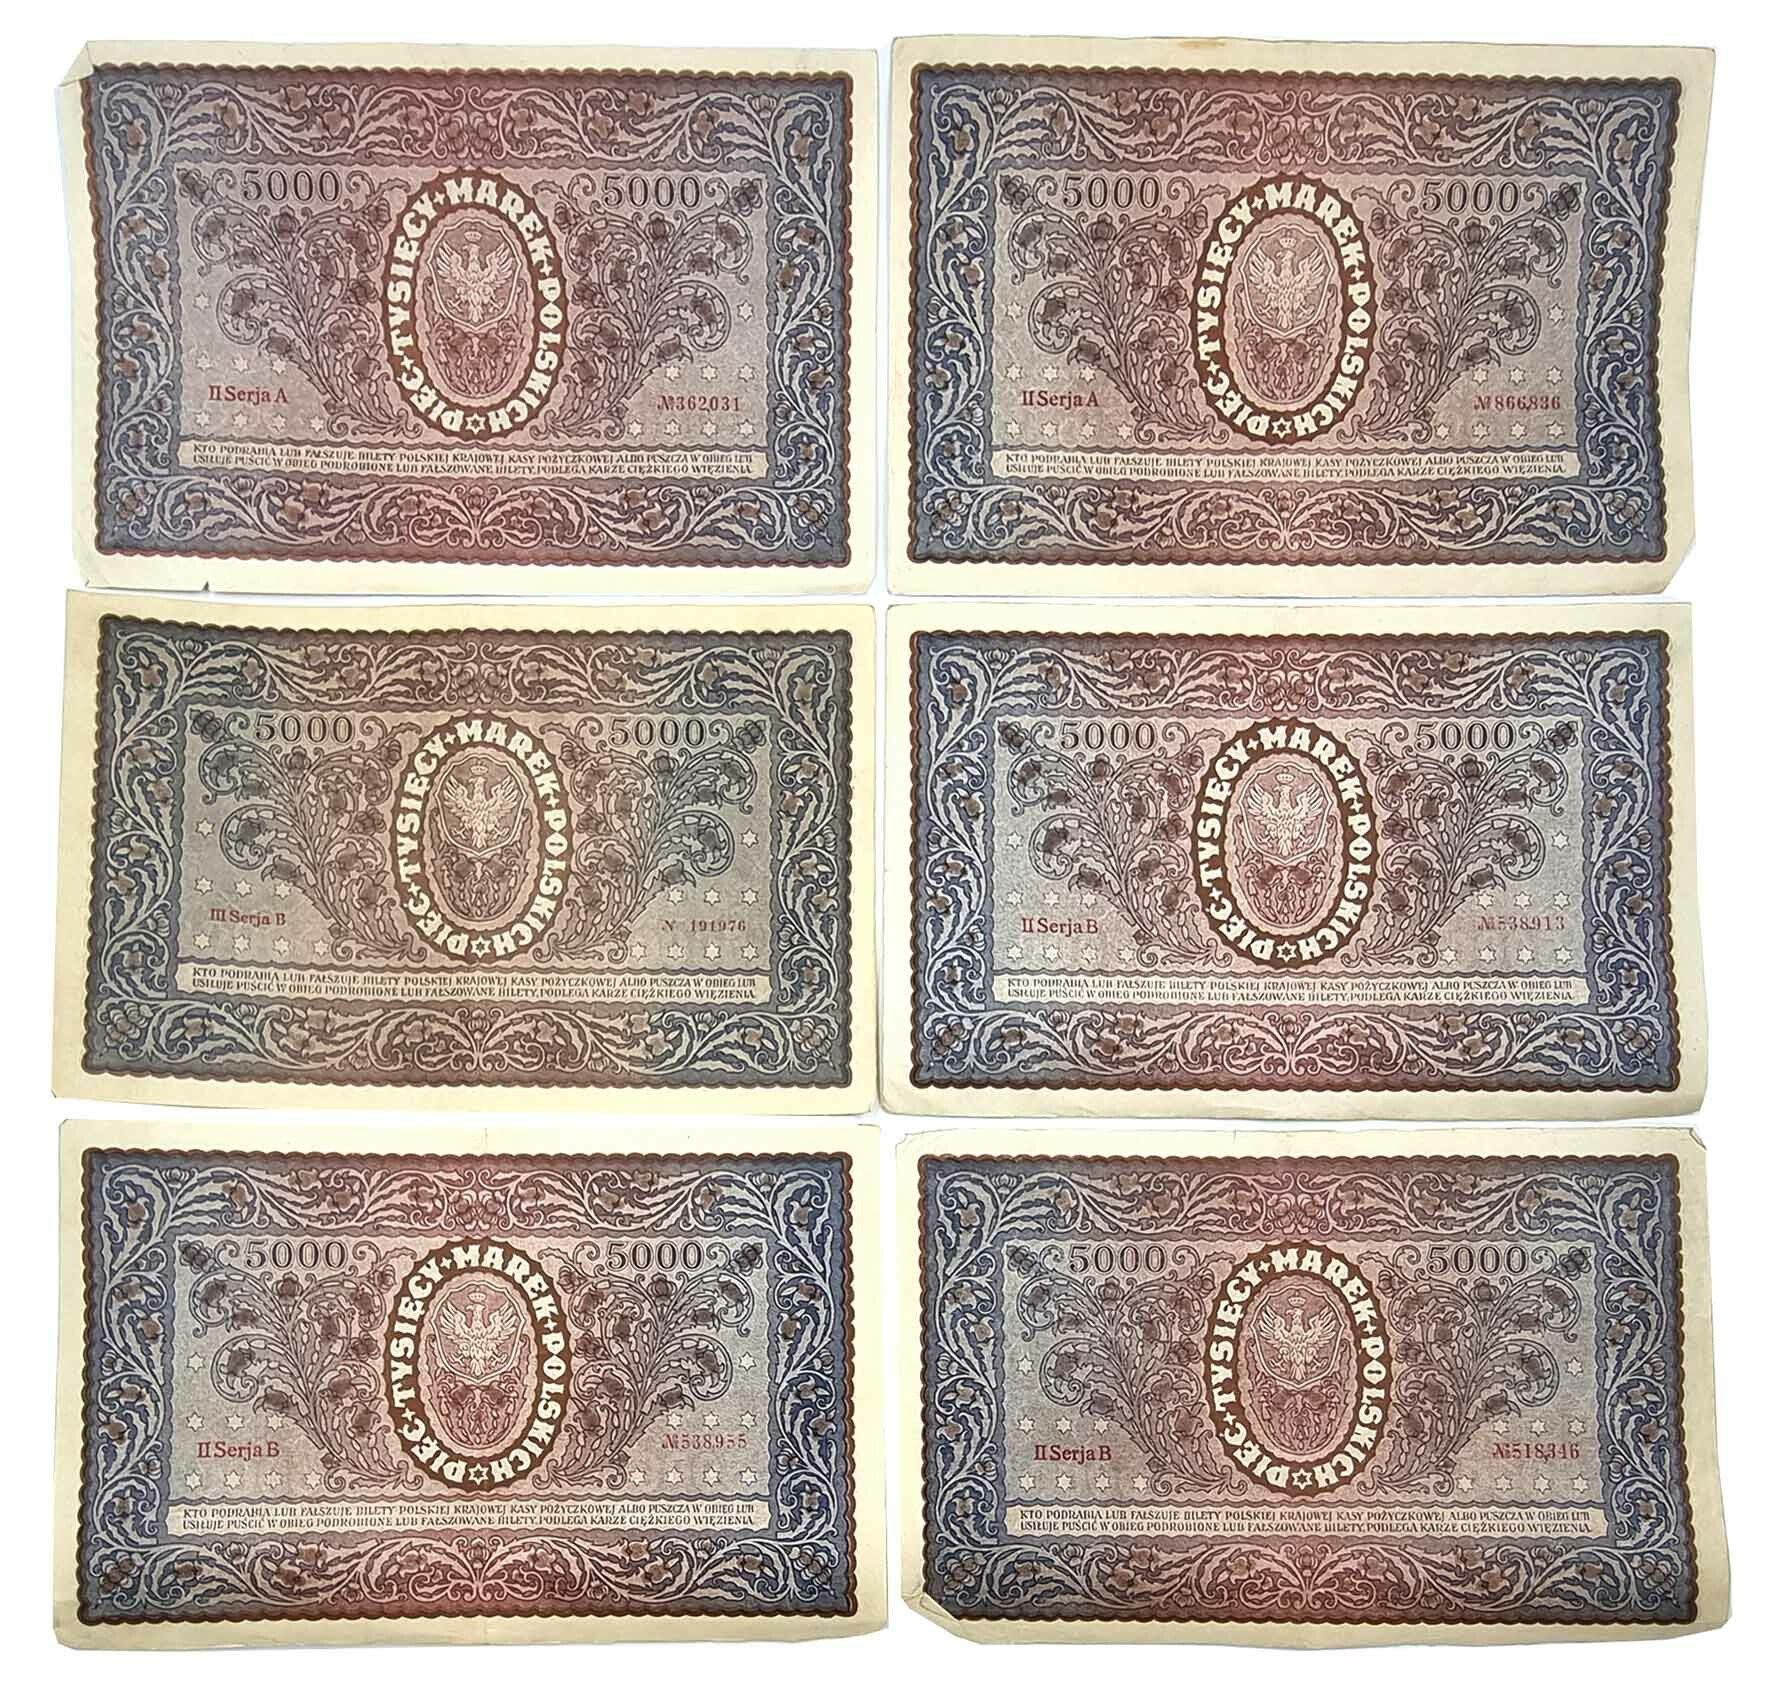 5.000 marek polskich 1920, różne serie, zestaw 6 banknotów